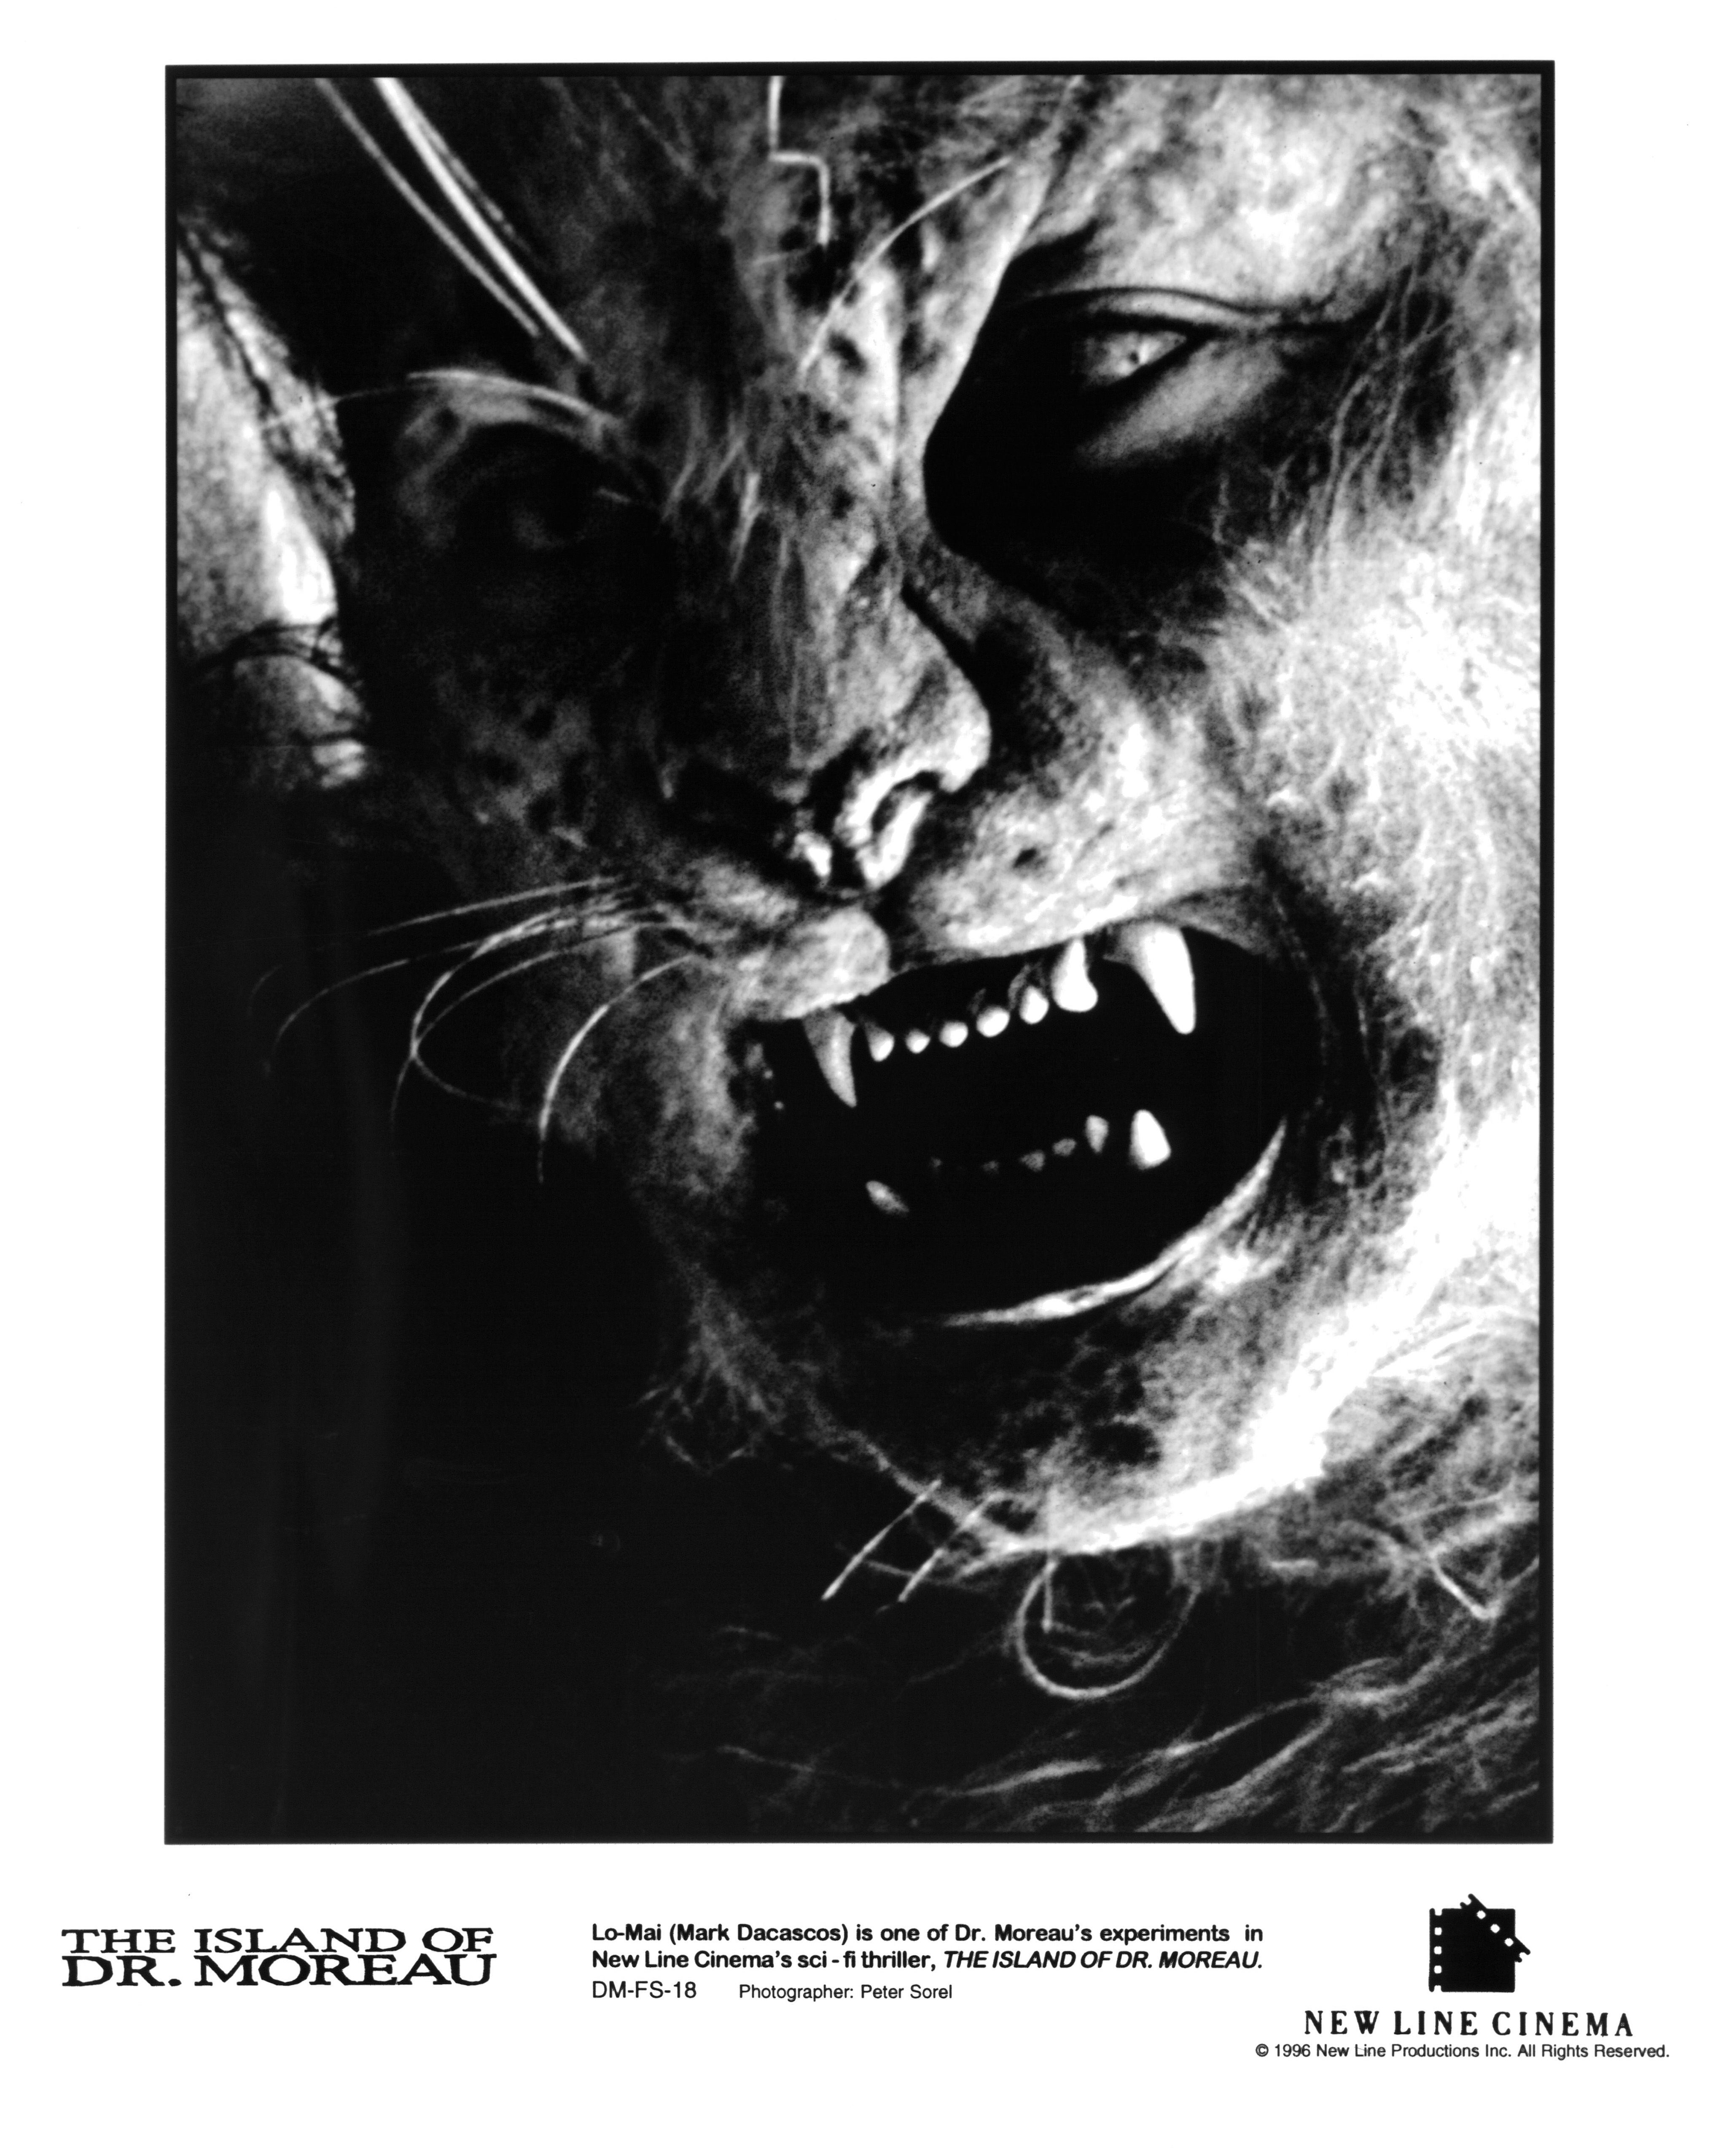 Cartaz promocional de ‘A ilha do Dr. Moreau’ com o ator Mark Dacascos caracterizado como uma das estranhas criaturas do filme.